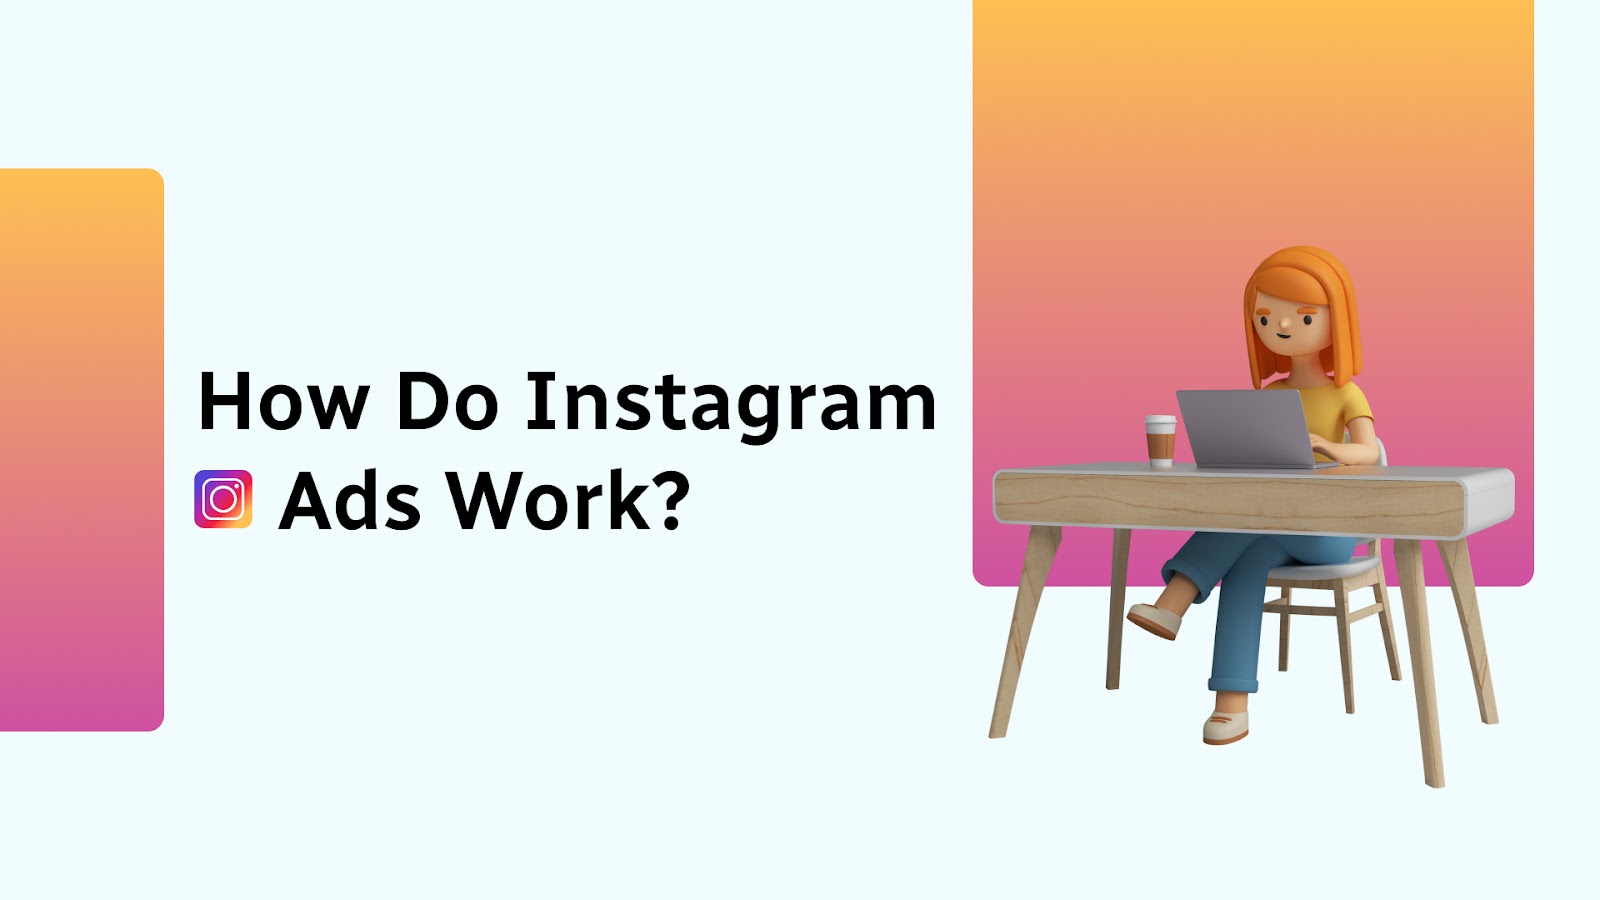 How Do Instagram Ads Work?